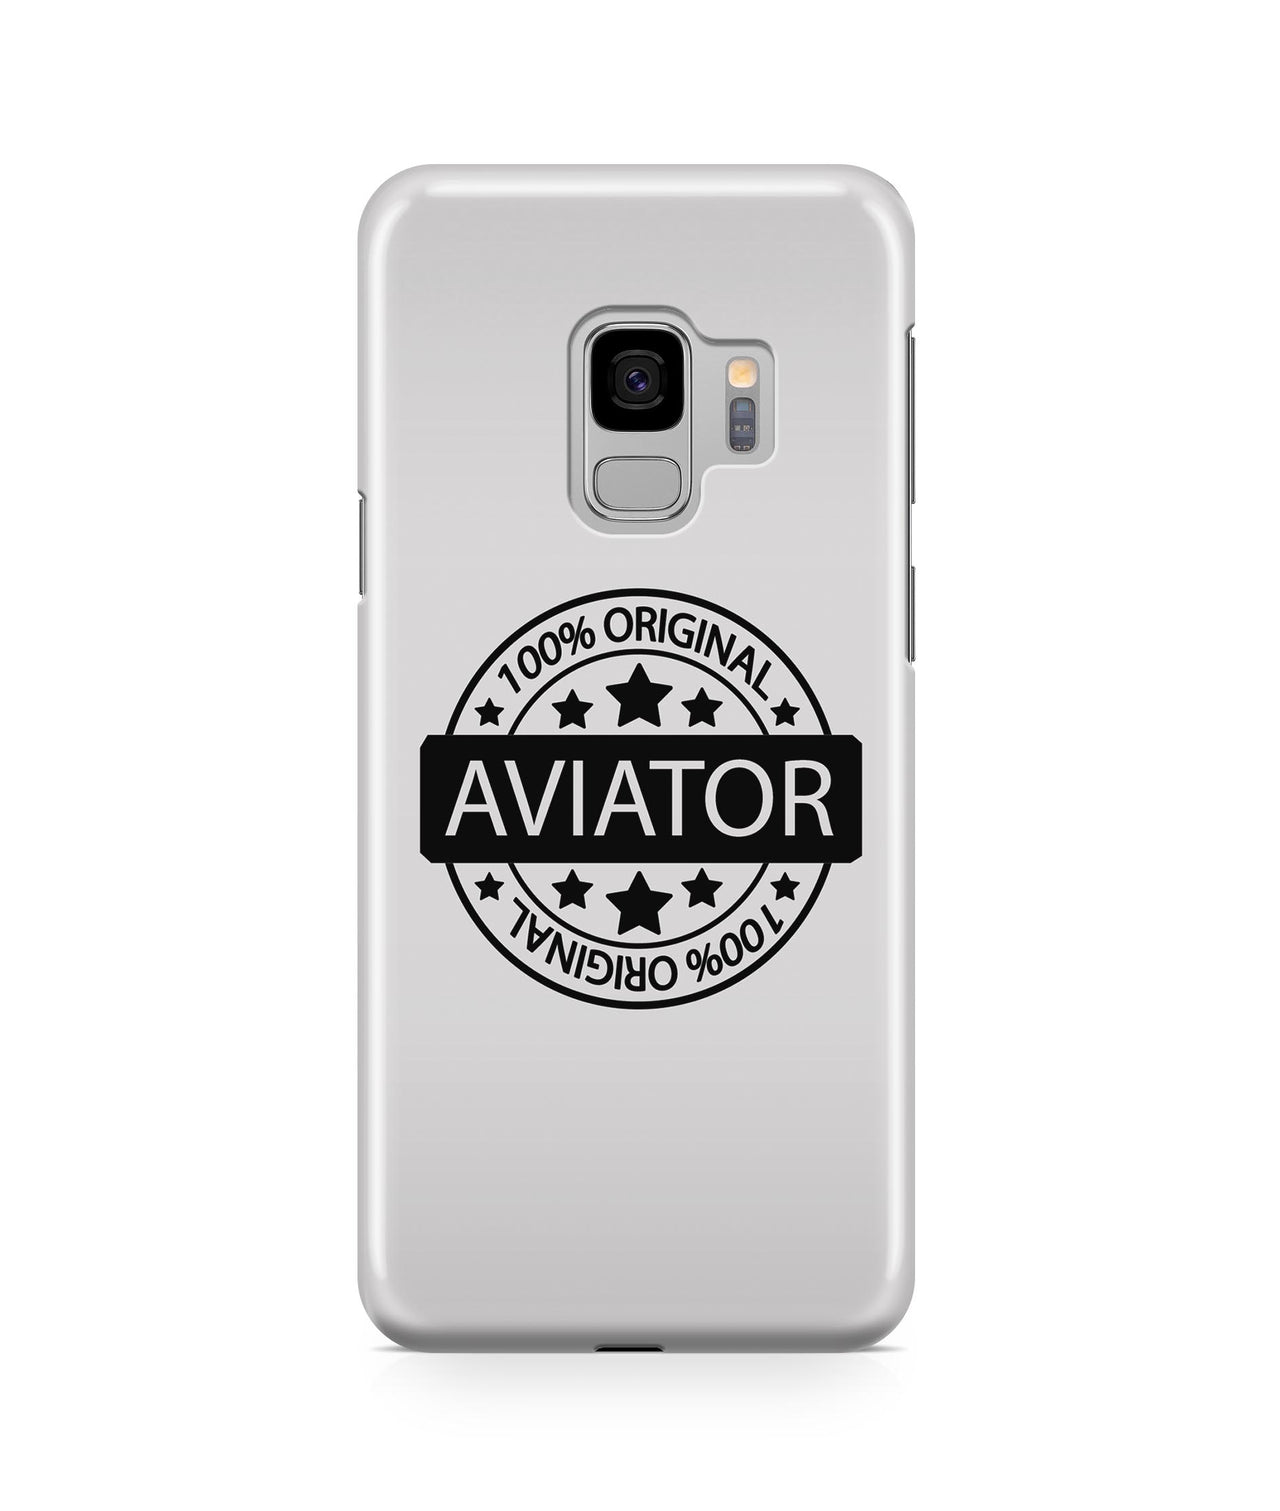 %100 Original Aviator Designed Samsung J Cases